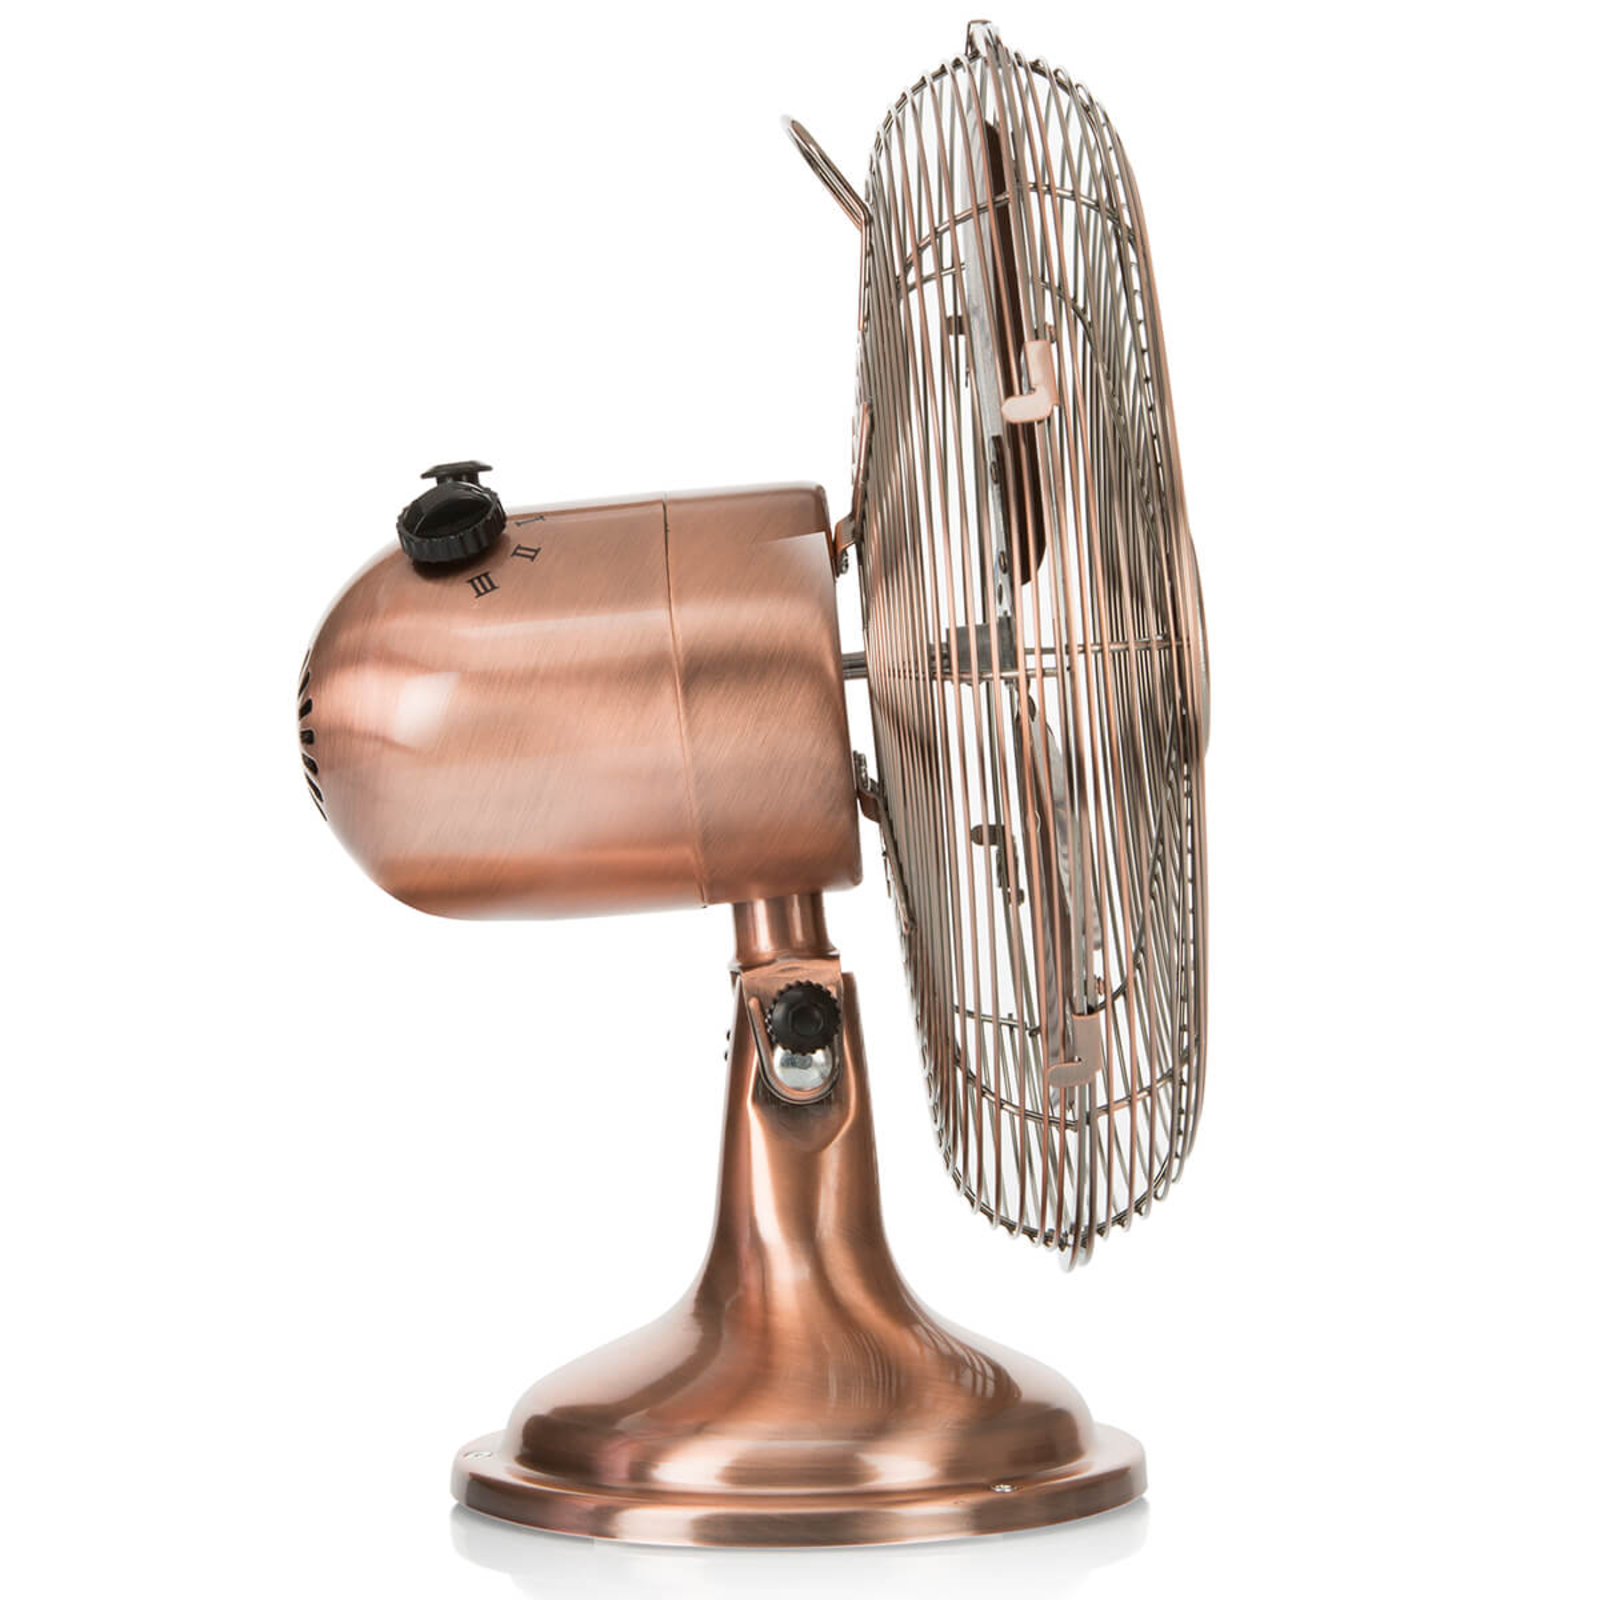 Le ventilateur Table Retrojet de casafan est un ventilateur retro